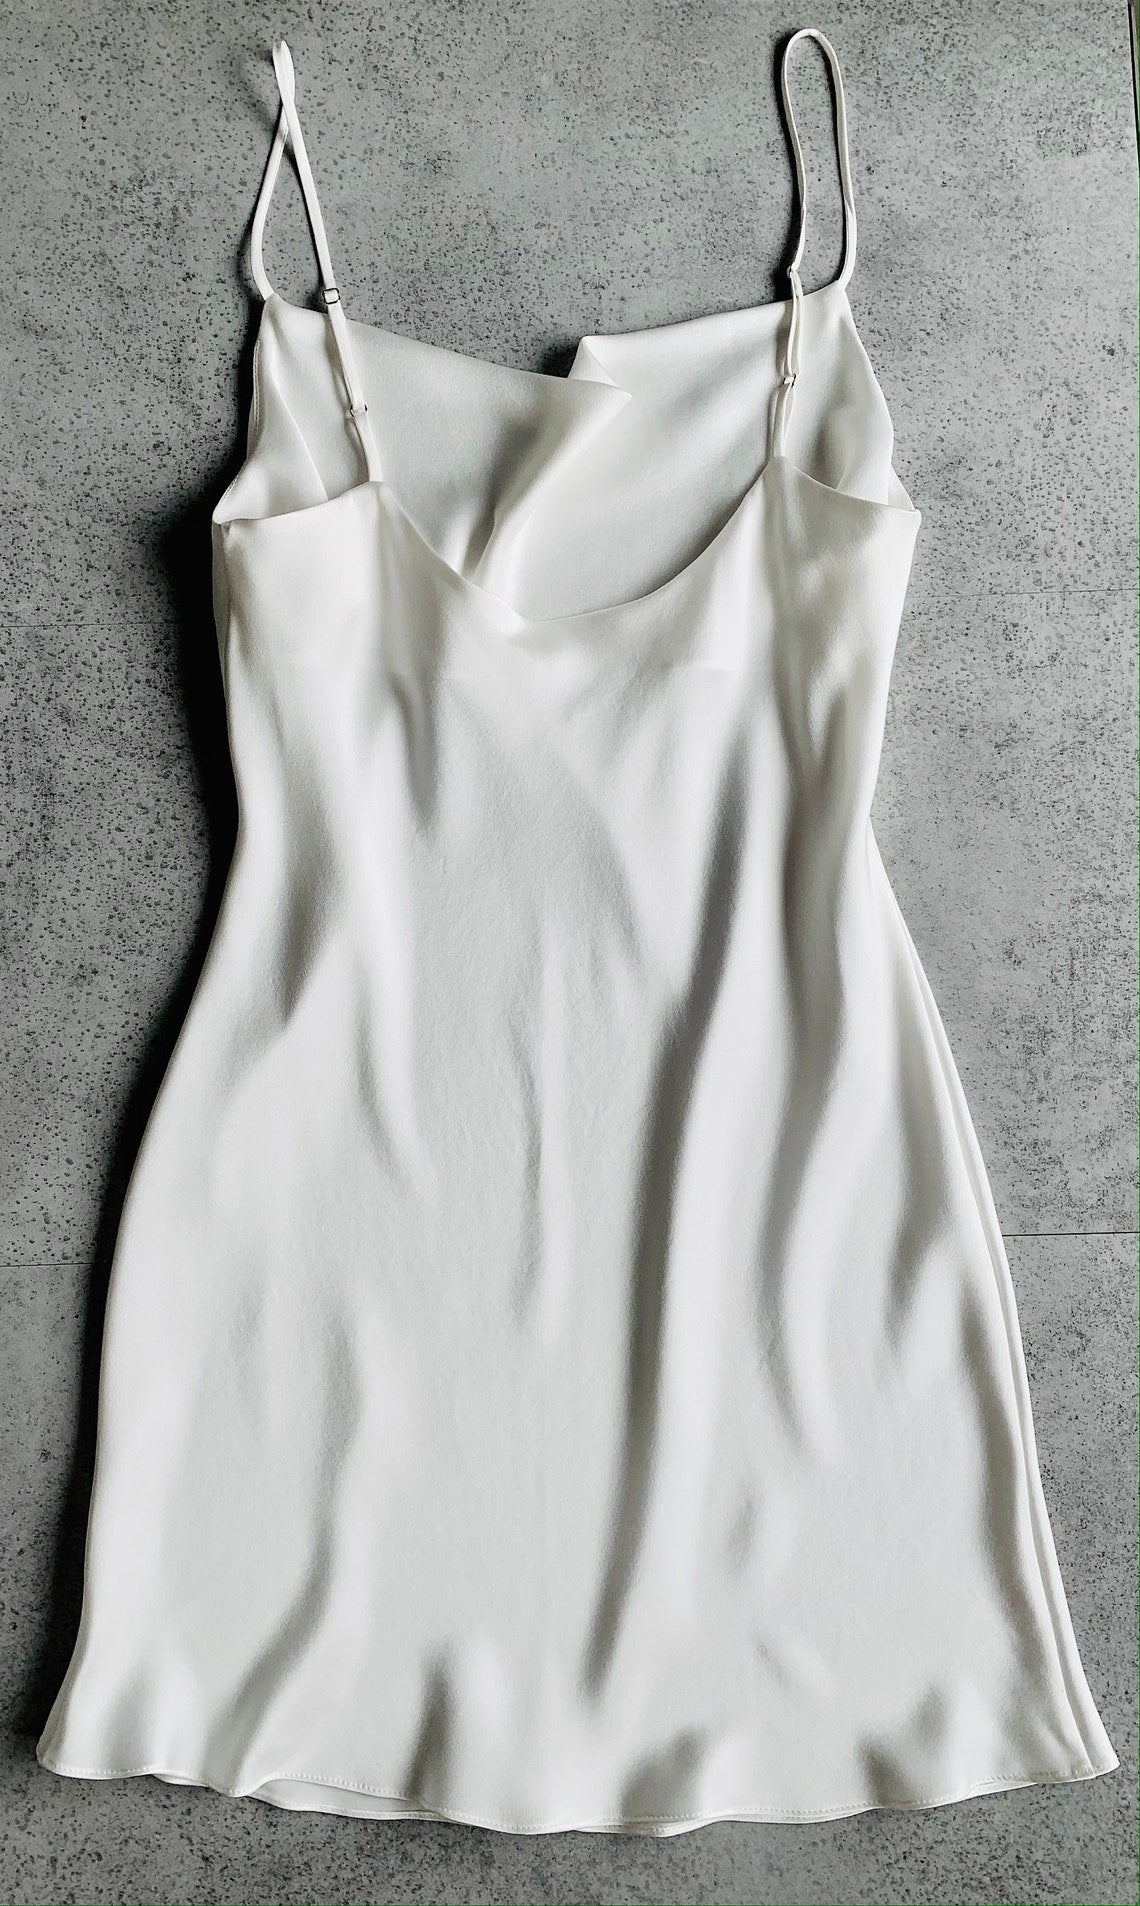 Cowl Neck Cami & Bias Cut Slip Dress Sewing Pattern | UK sizes 6-24 | Marlene